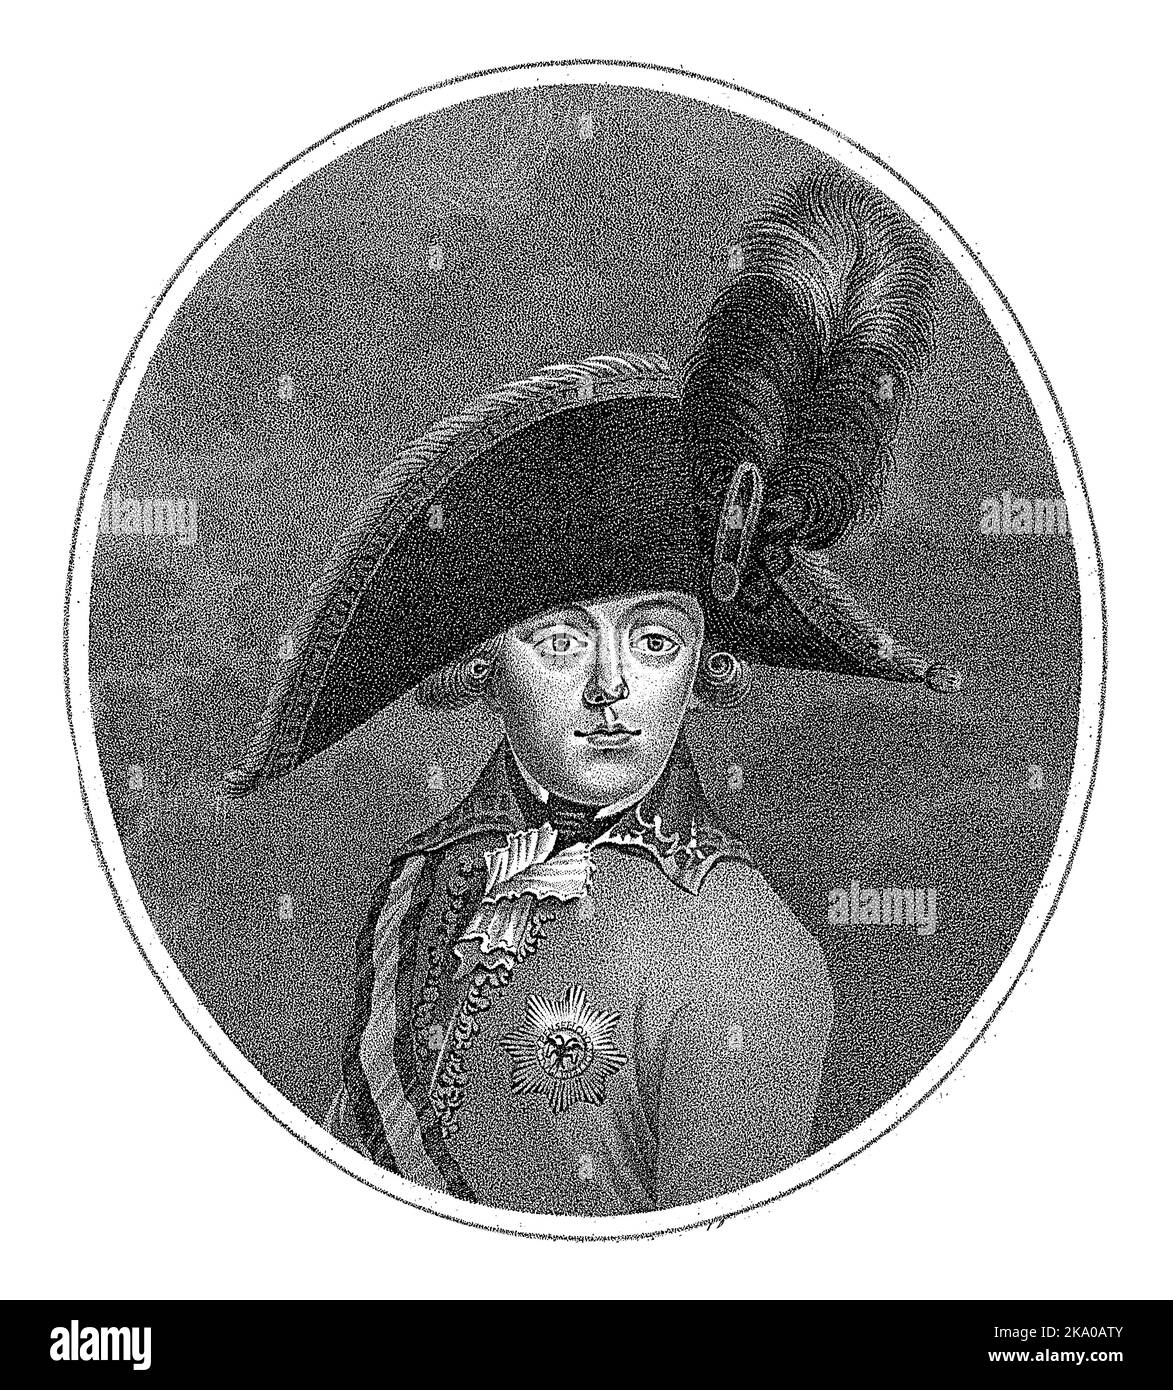 Porträt von Prinz Willem George Frederik van Oranje-Nassau, Johan van der Spruyt, 1783 - 1800 Porträt von William George Frederik, Prinz von Oranien-N Stockfoto